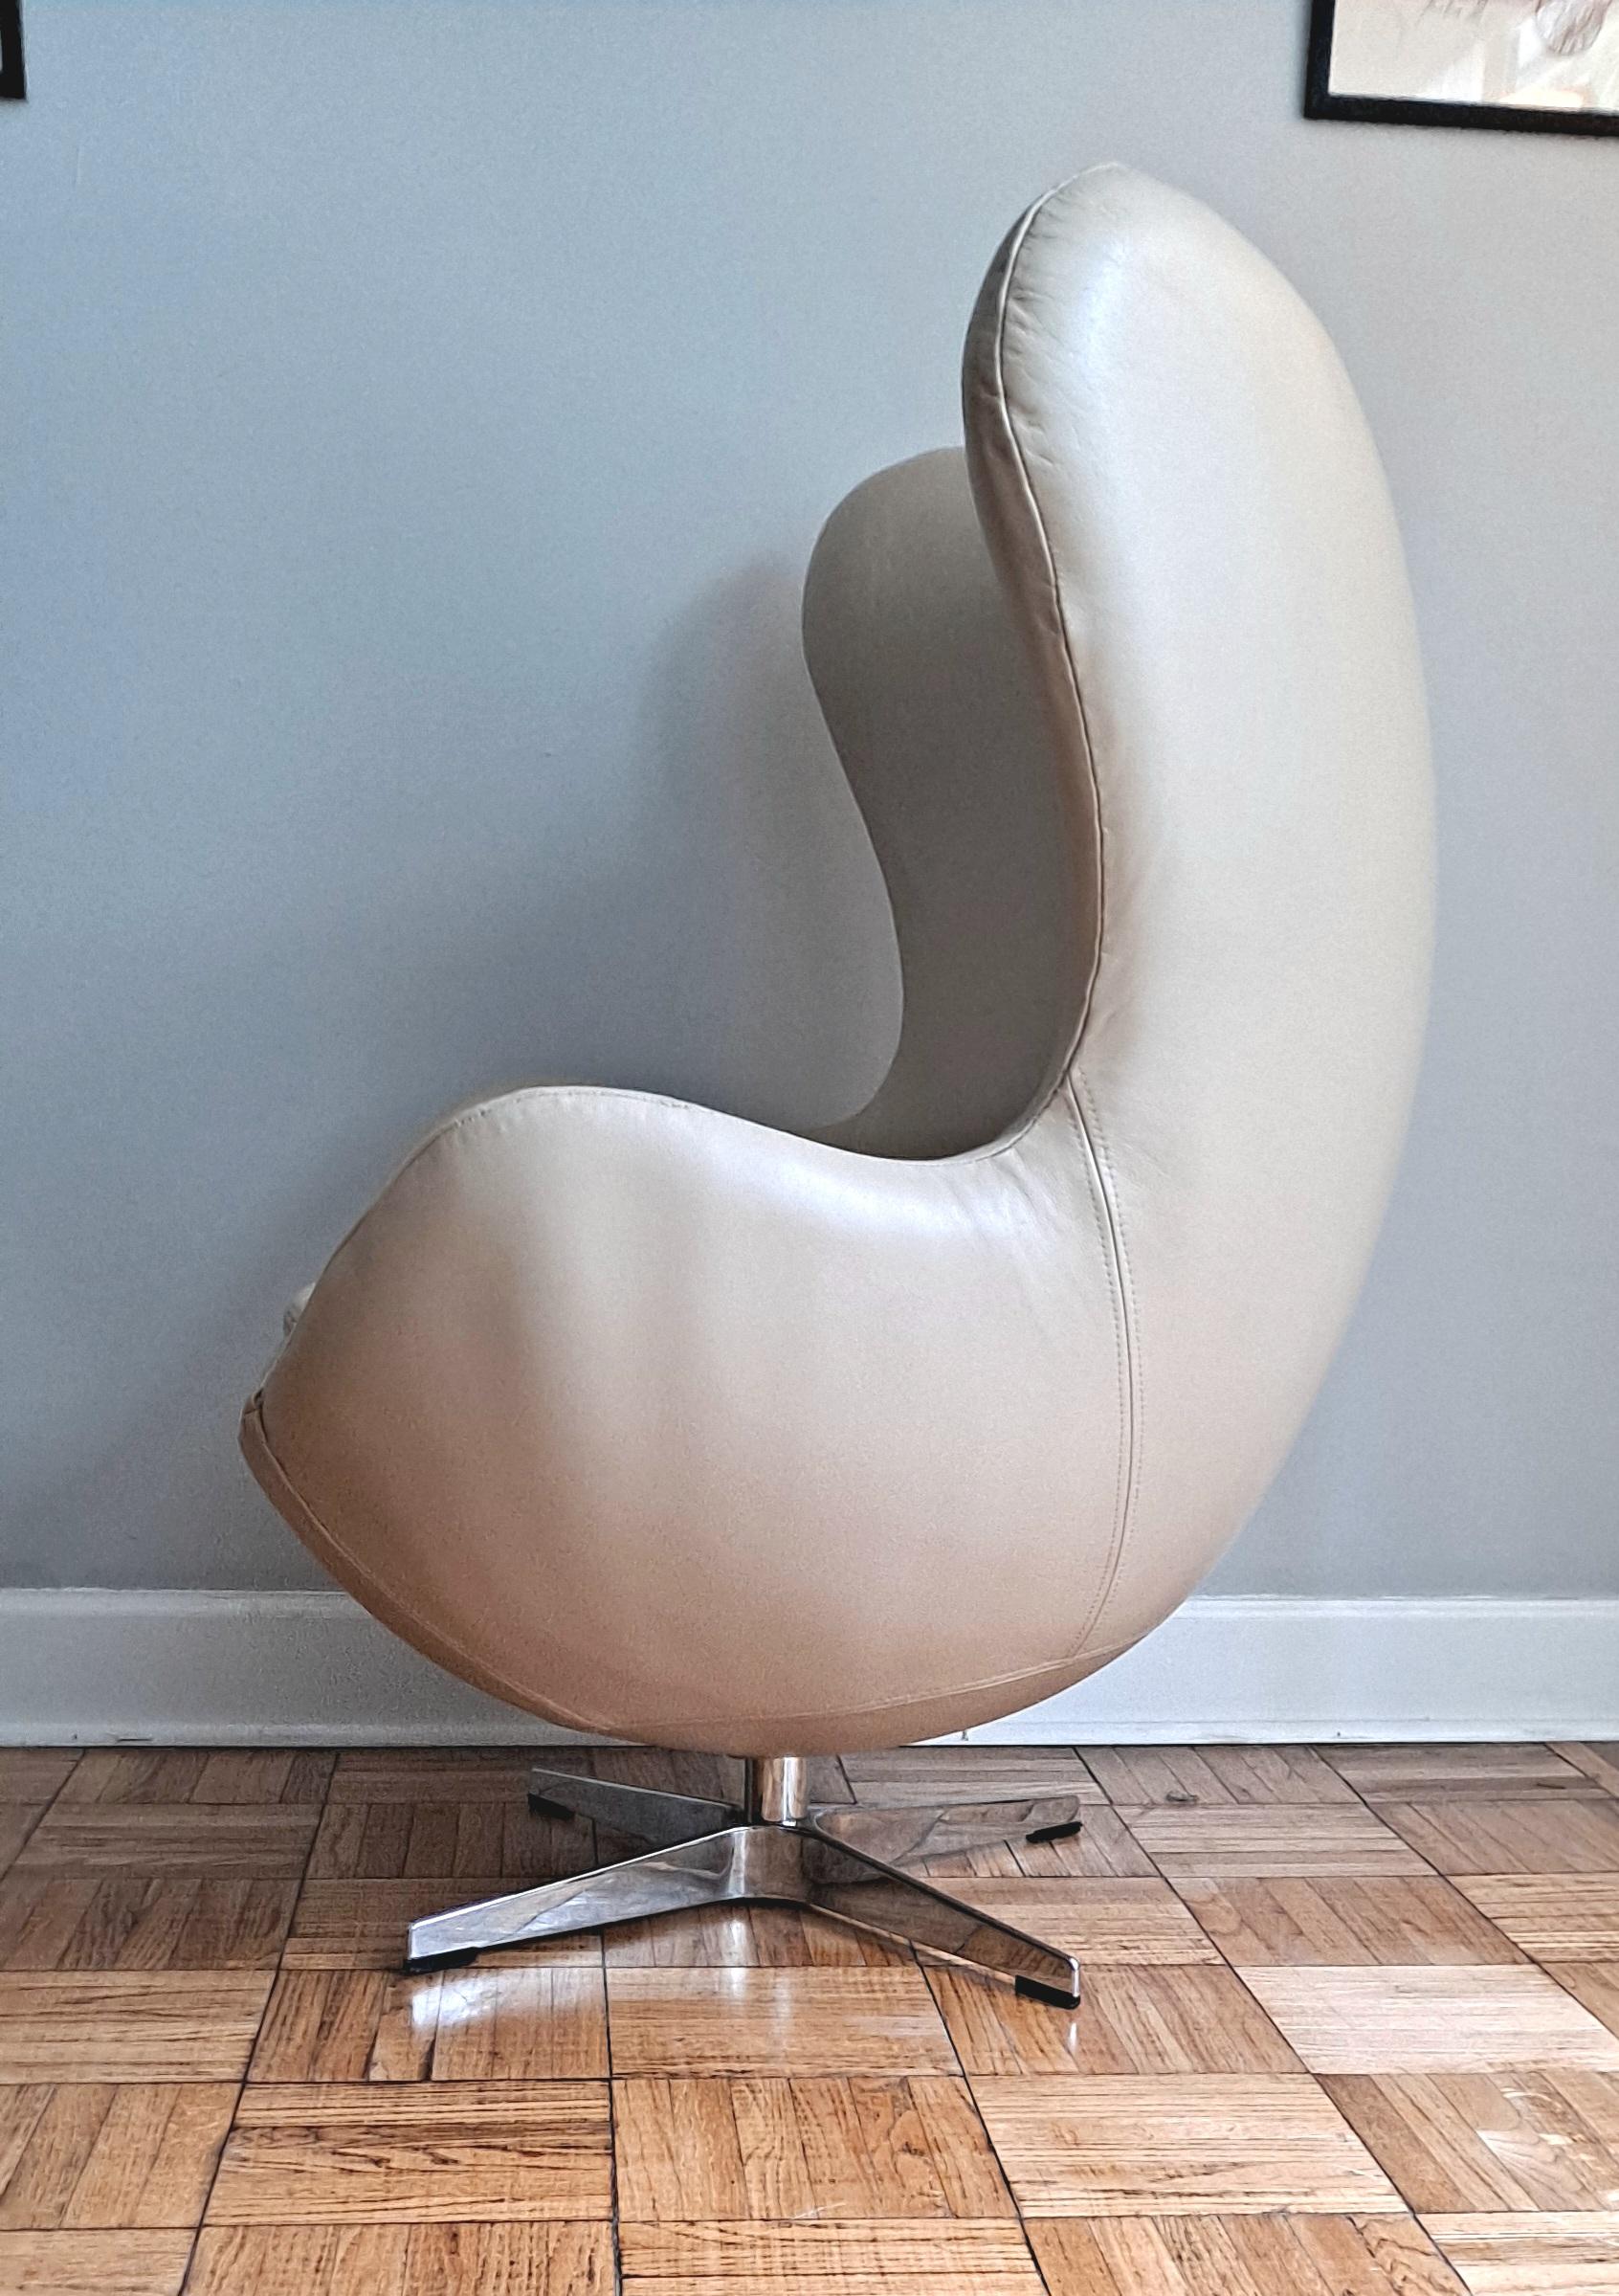 La chaise Egg™ d'Arne Jacobsen est un chef-d'œuvre du design danois. Jacobsen a trouvé la forme parfaite de la chaise en expérimentant avec du fil de fer et du plâtre dans son garage. Aujourd'hui, la chaise Egg est reconnue dans le monde entier